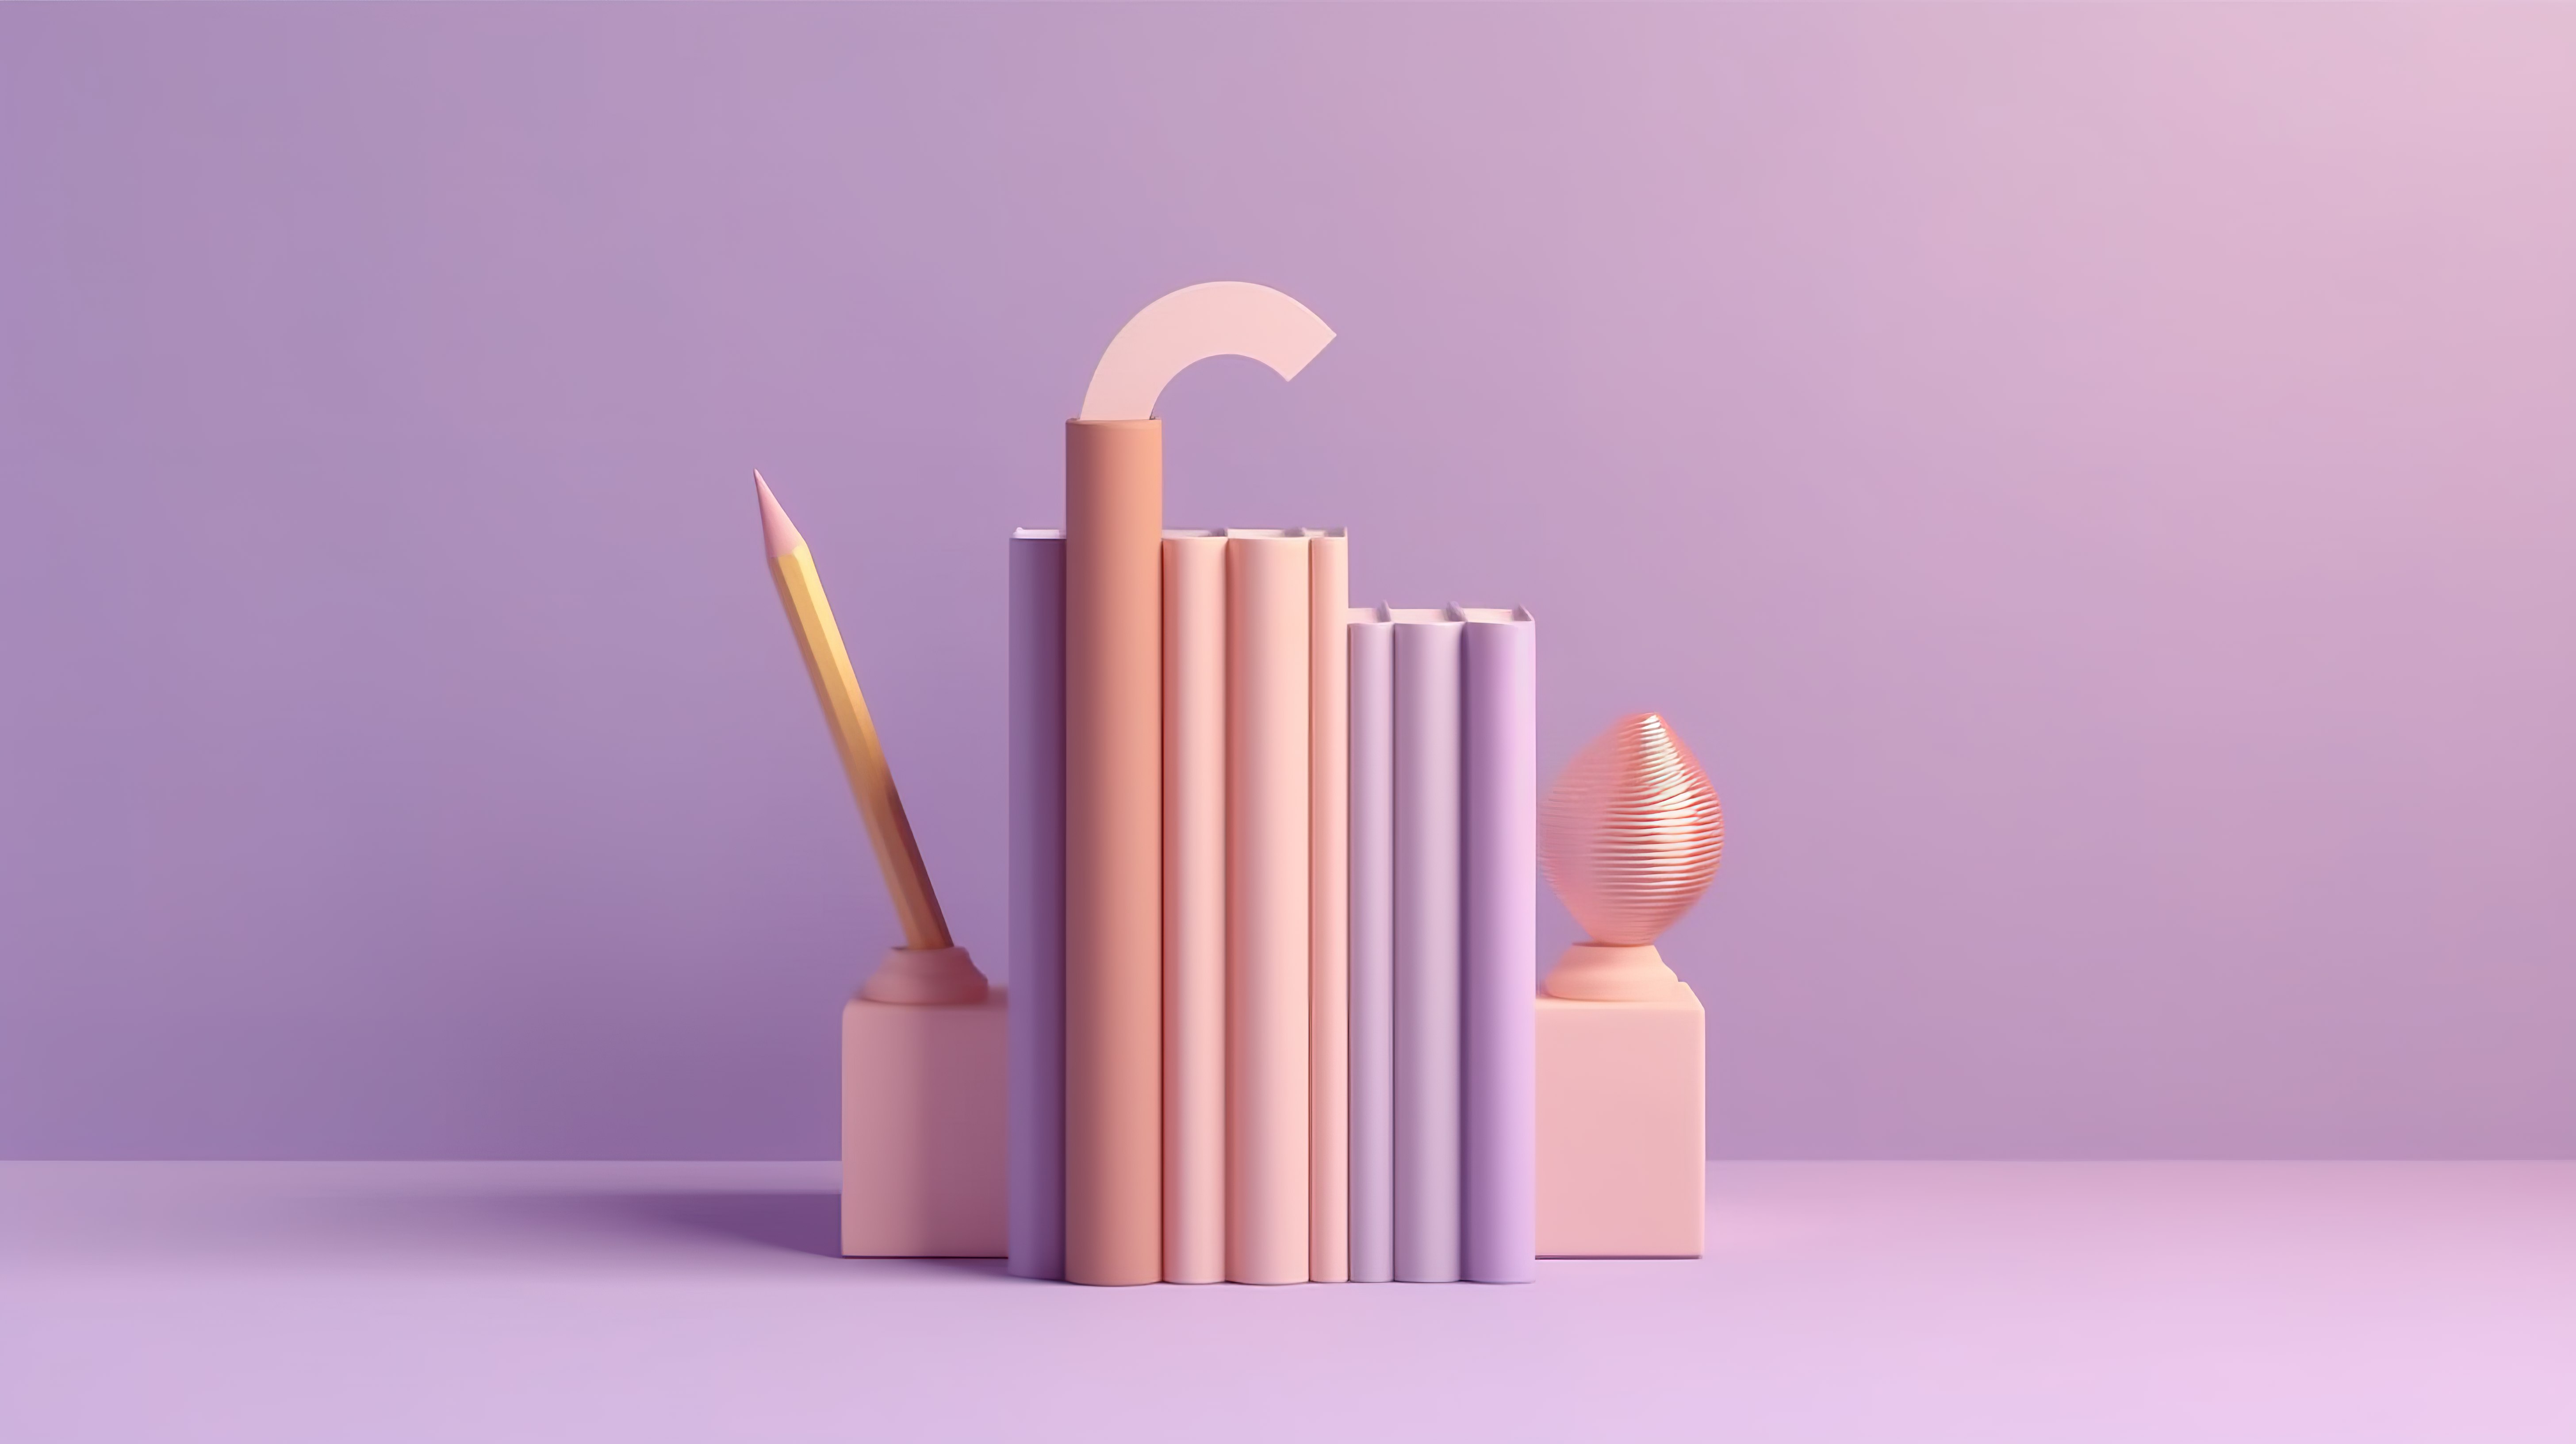 探索想法 3D 渲染铅笔和问号在柔和的紫色墙上与打开的书简约场景象征着教育好奇心和创造力图片